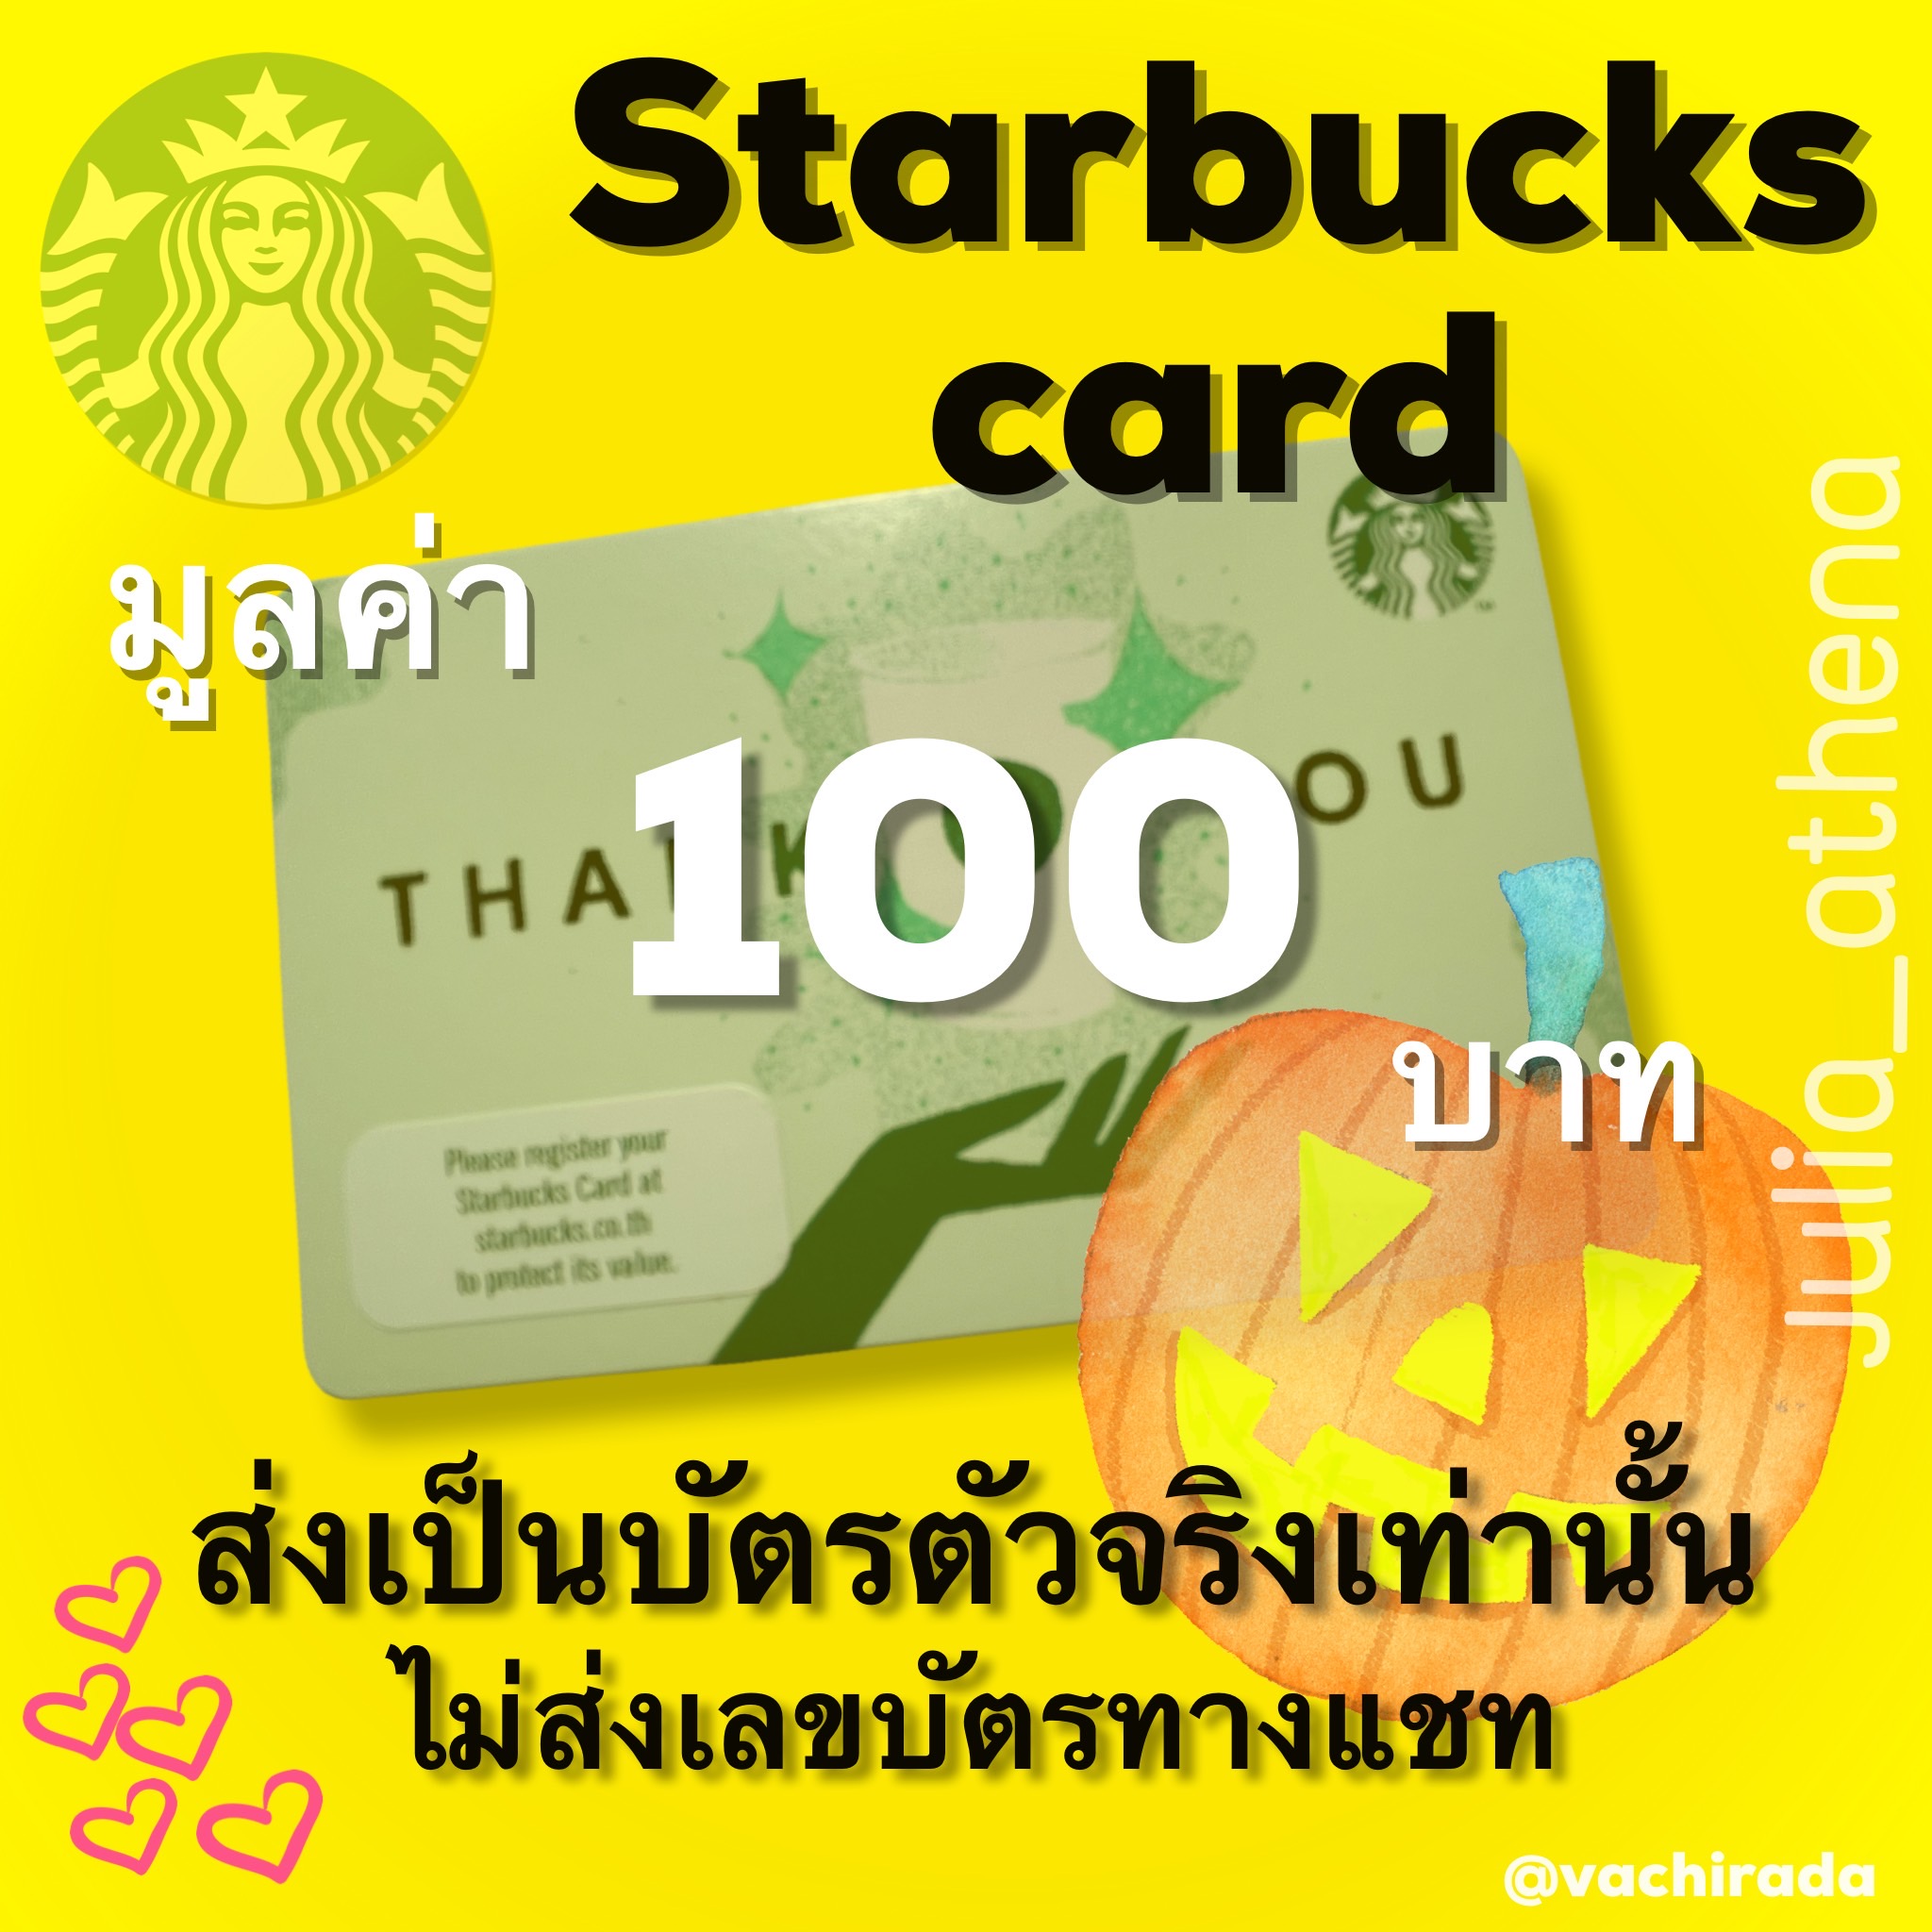 รูปภาพรายละเอียดของ Starbucks card มูลค่า 100 บาทส่งบัตรจริงผ่านขนส่ง